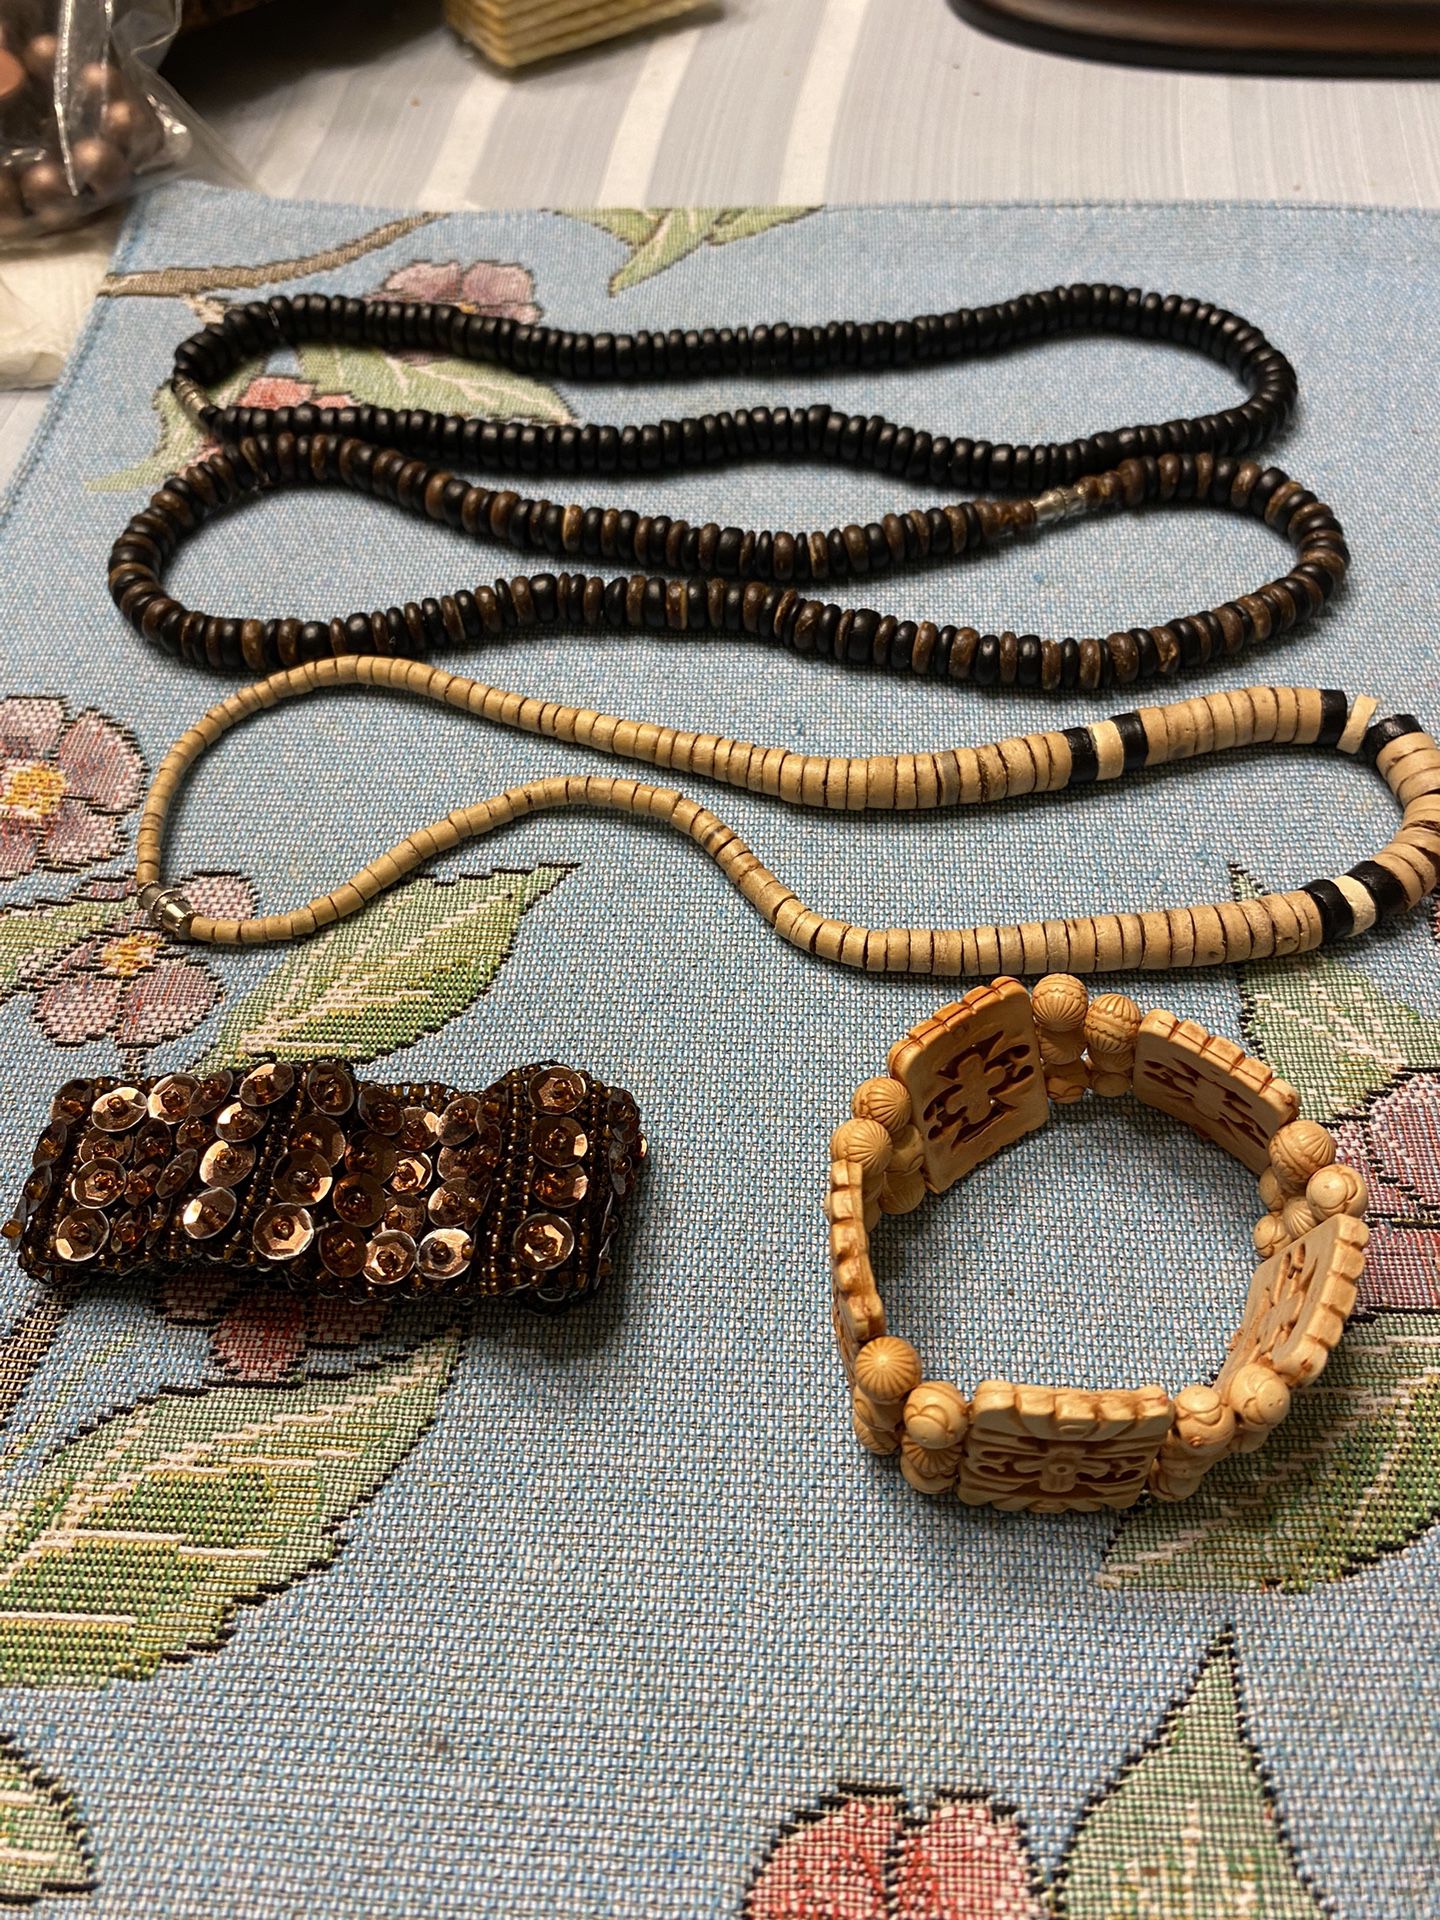 3 Ladies Necklaces And 2 Bracelets 